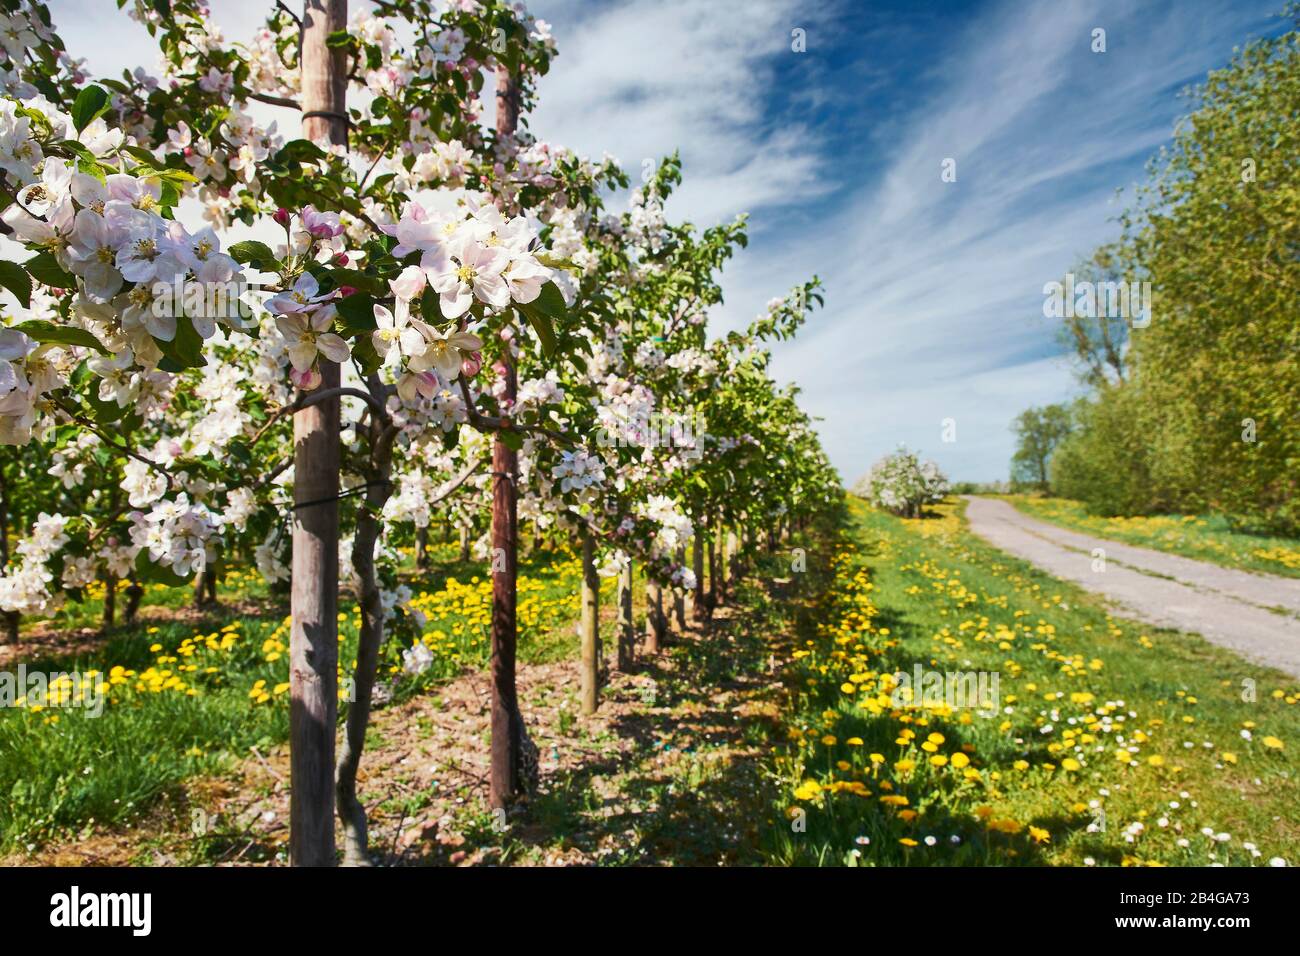 Germania, Bassa Sassonia, Altes Land, Jork, fiori di frutta, fiori di mela, fila di alberi accanto a una strada sterrata Foto Stock